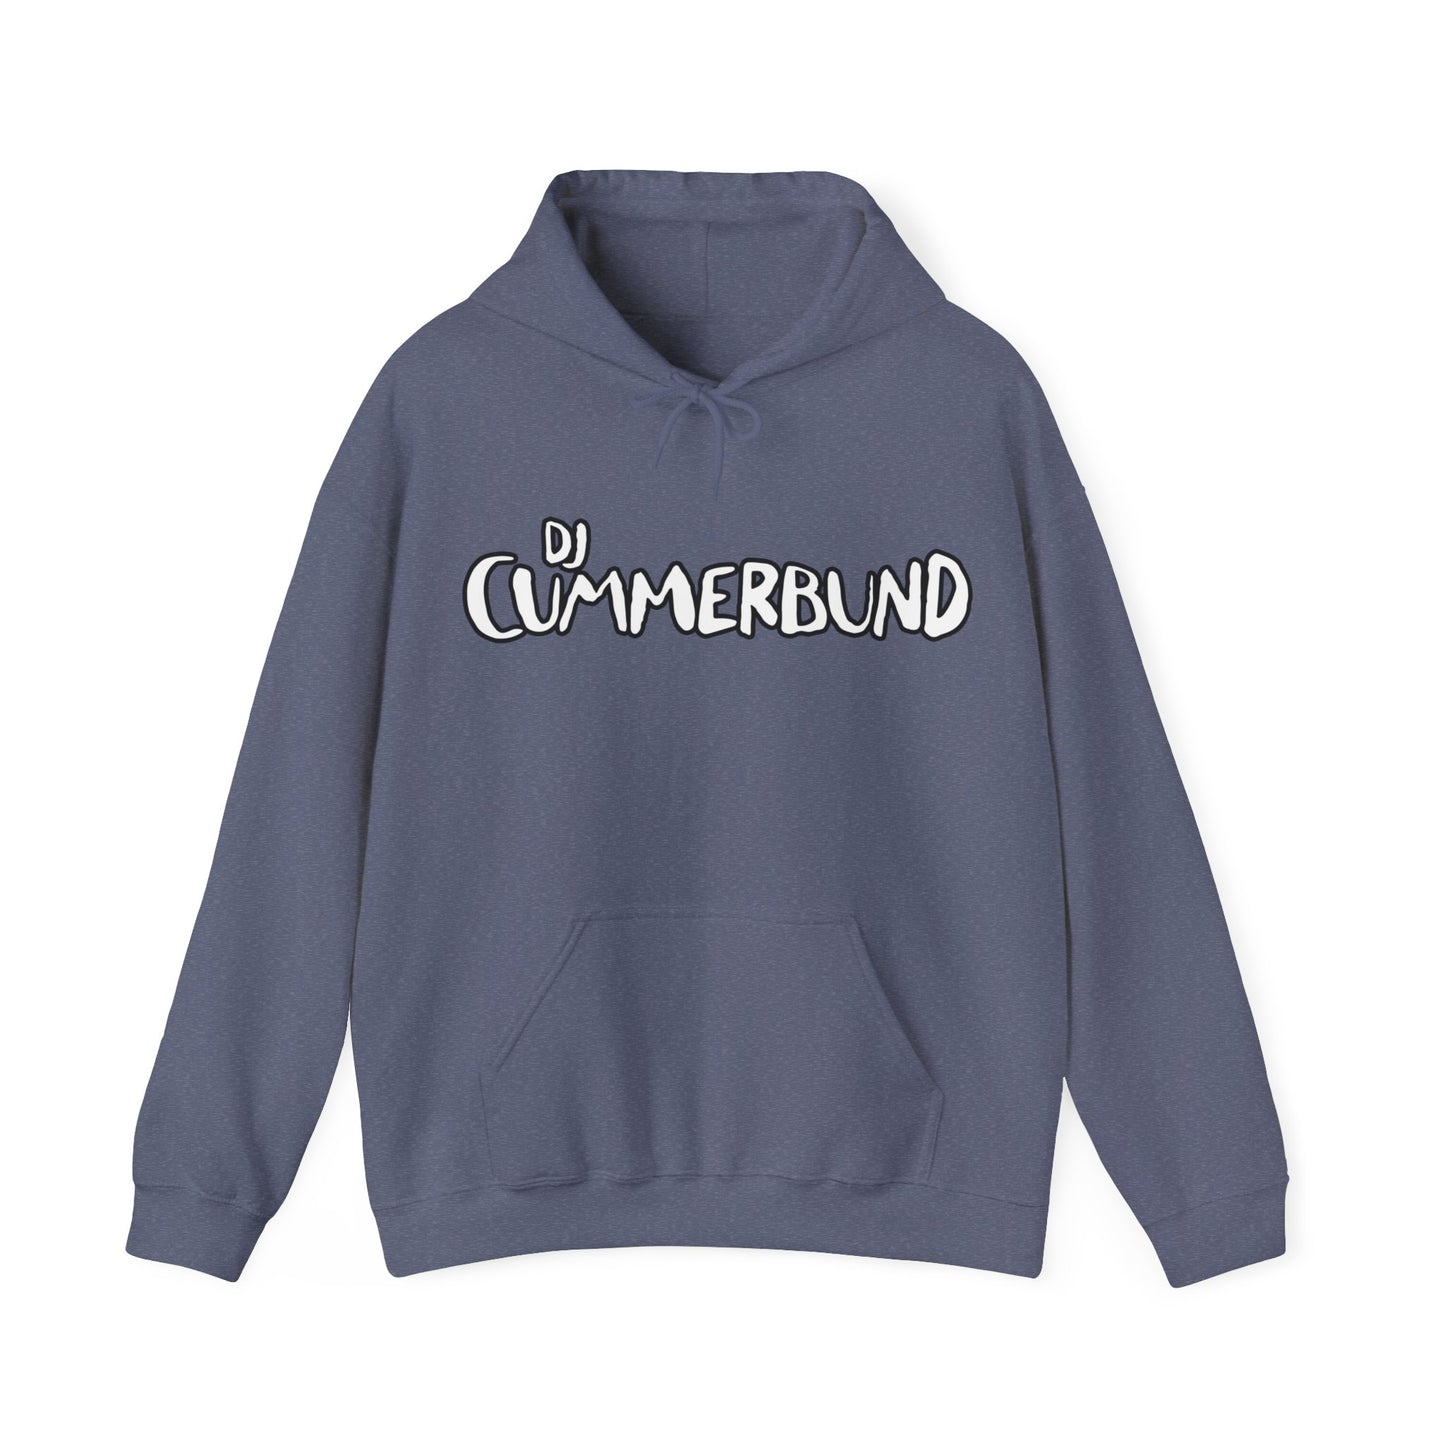 DJ Cummerbund Logo Hoodie